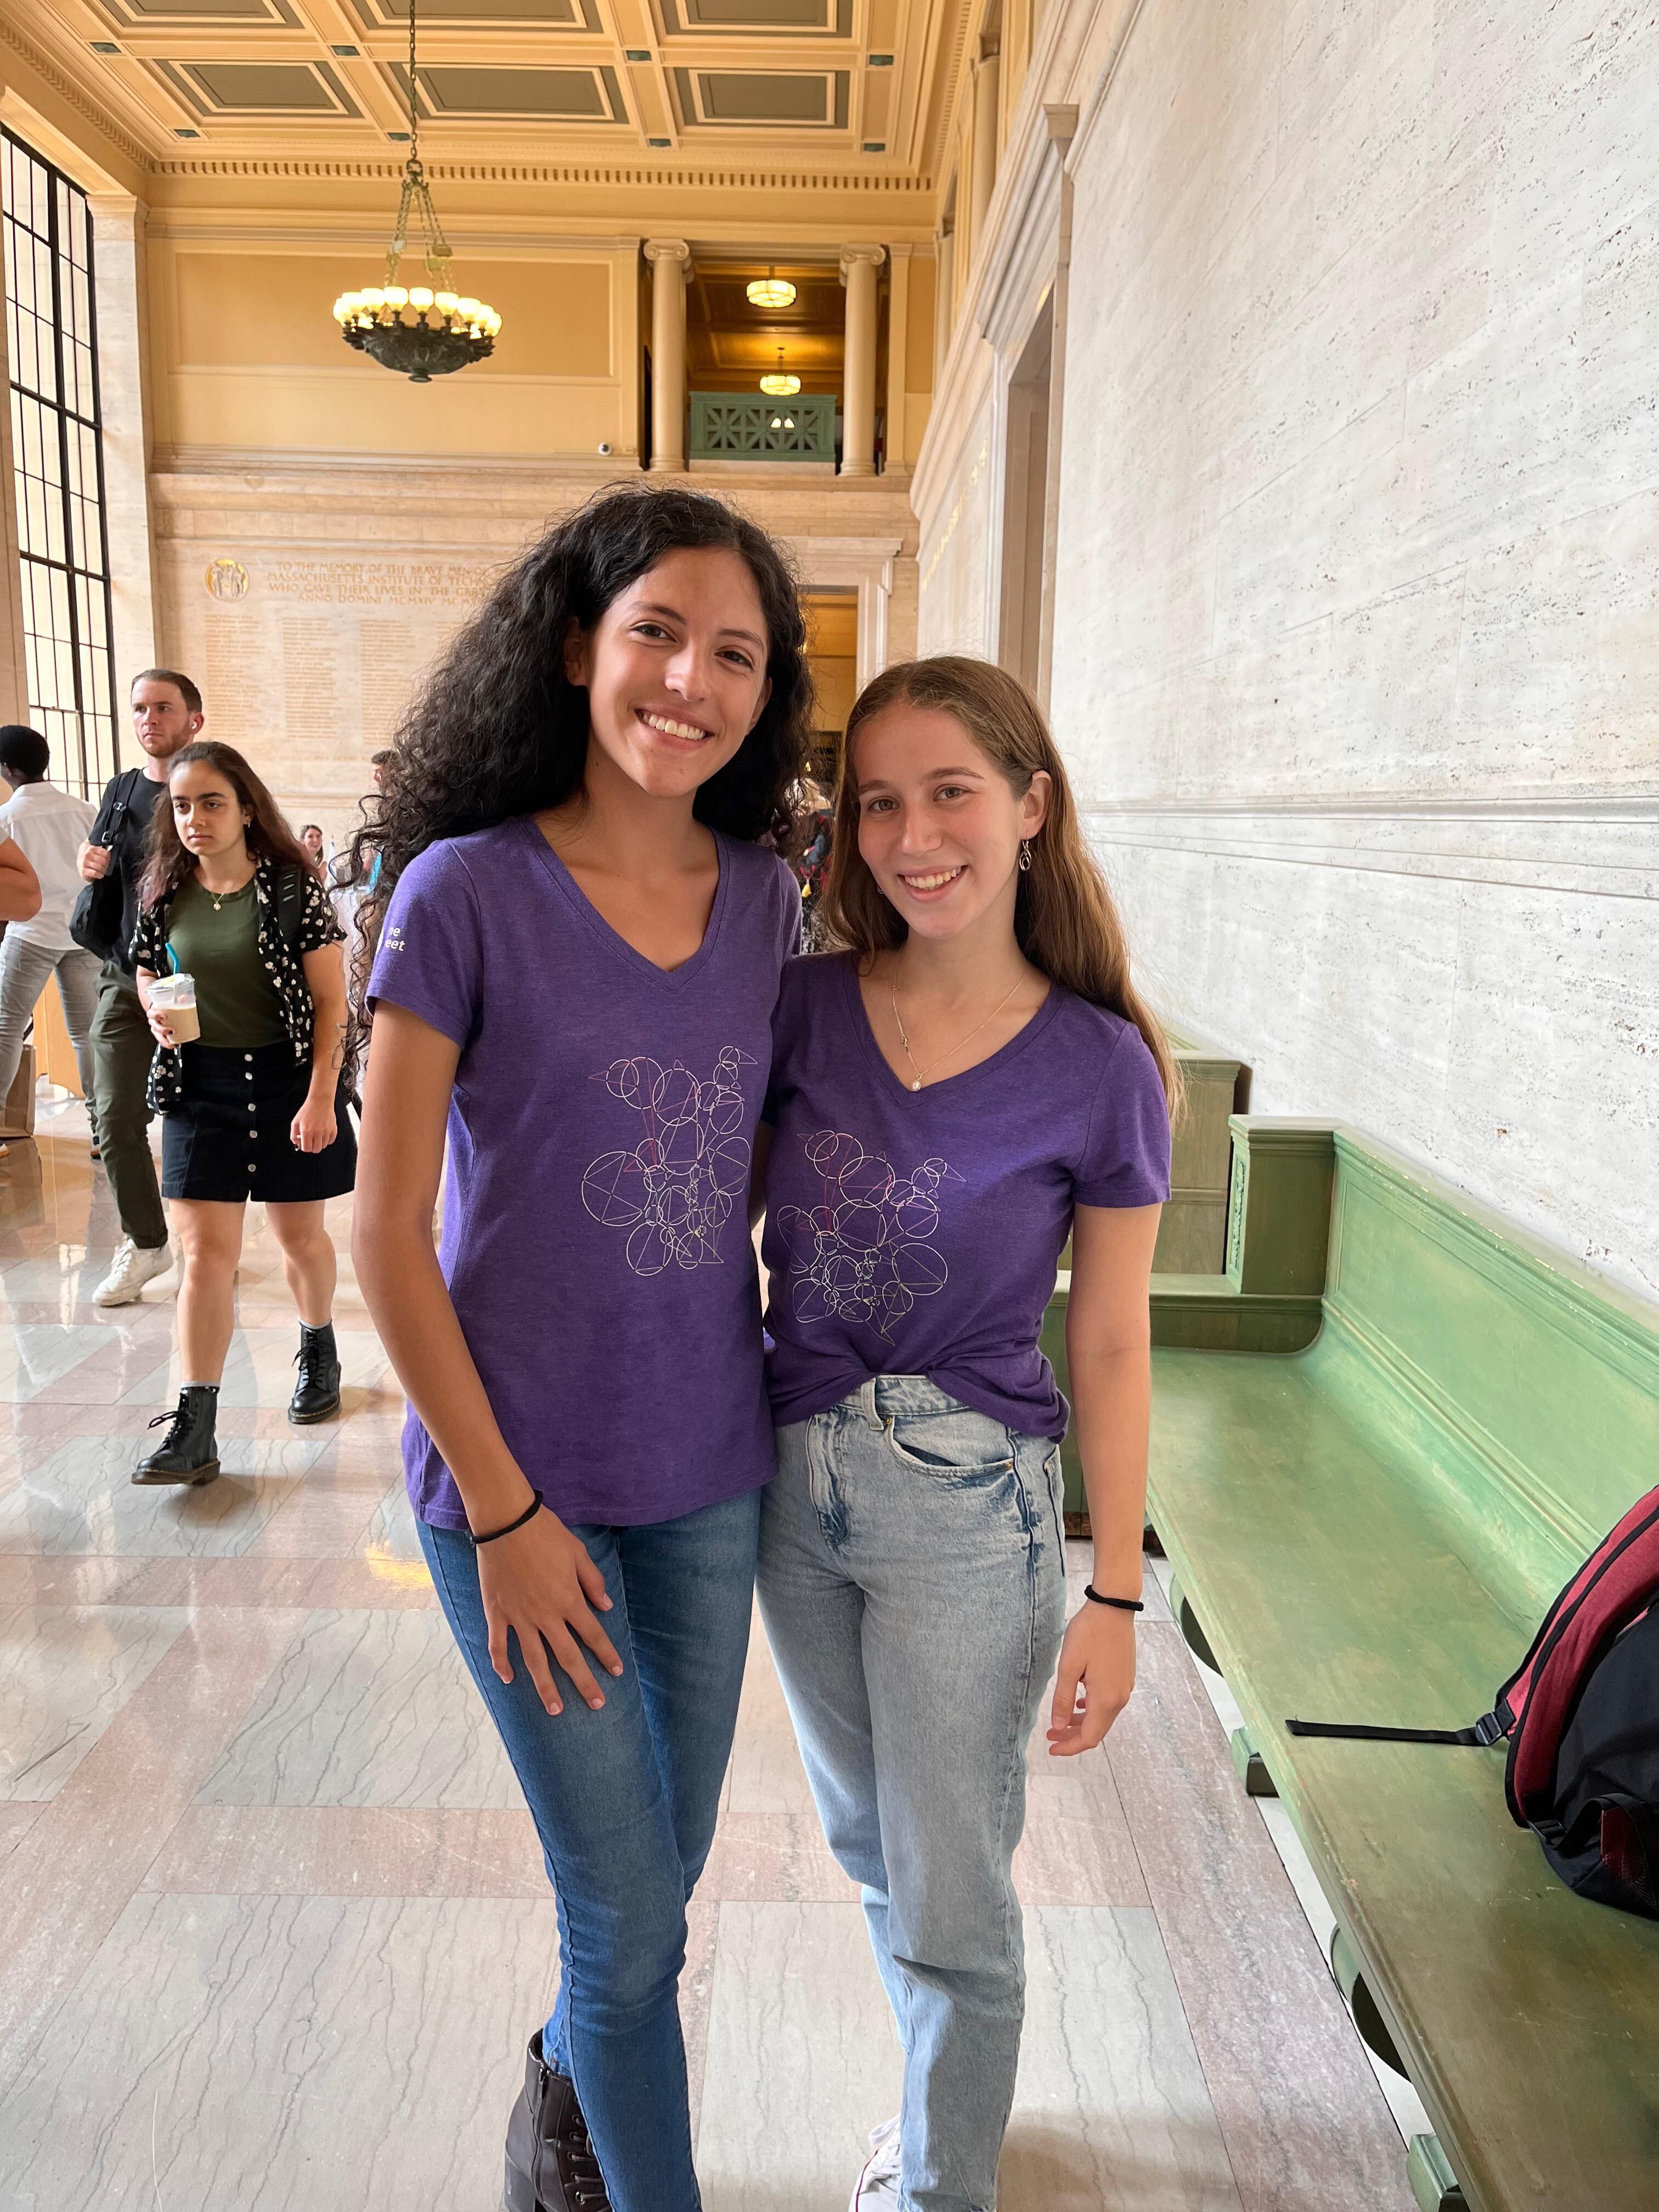 Kristel Acuña (izquierda) y Nicole Lipschitz fueron becadas en la prestigiosa universidad estadounidense MIT. Allí, en carreras diferentes, ambas aprovechan lo que les dieron las Olimpiadas de Matemáticas.

Fotografía: Cortesía